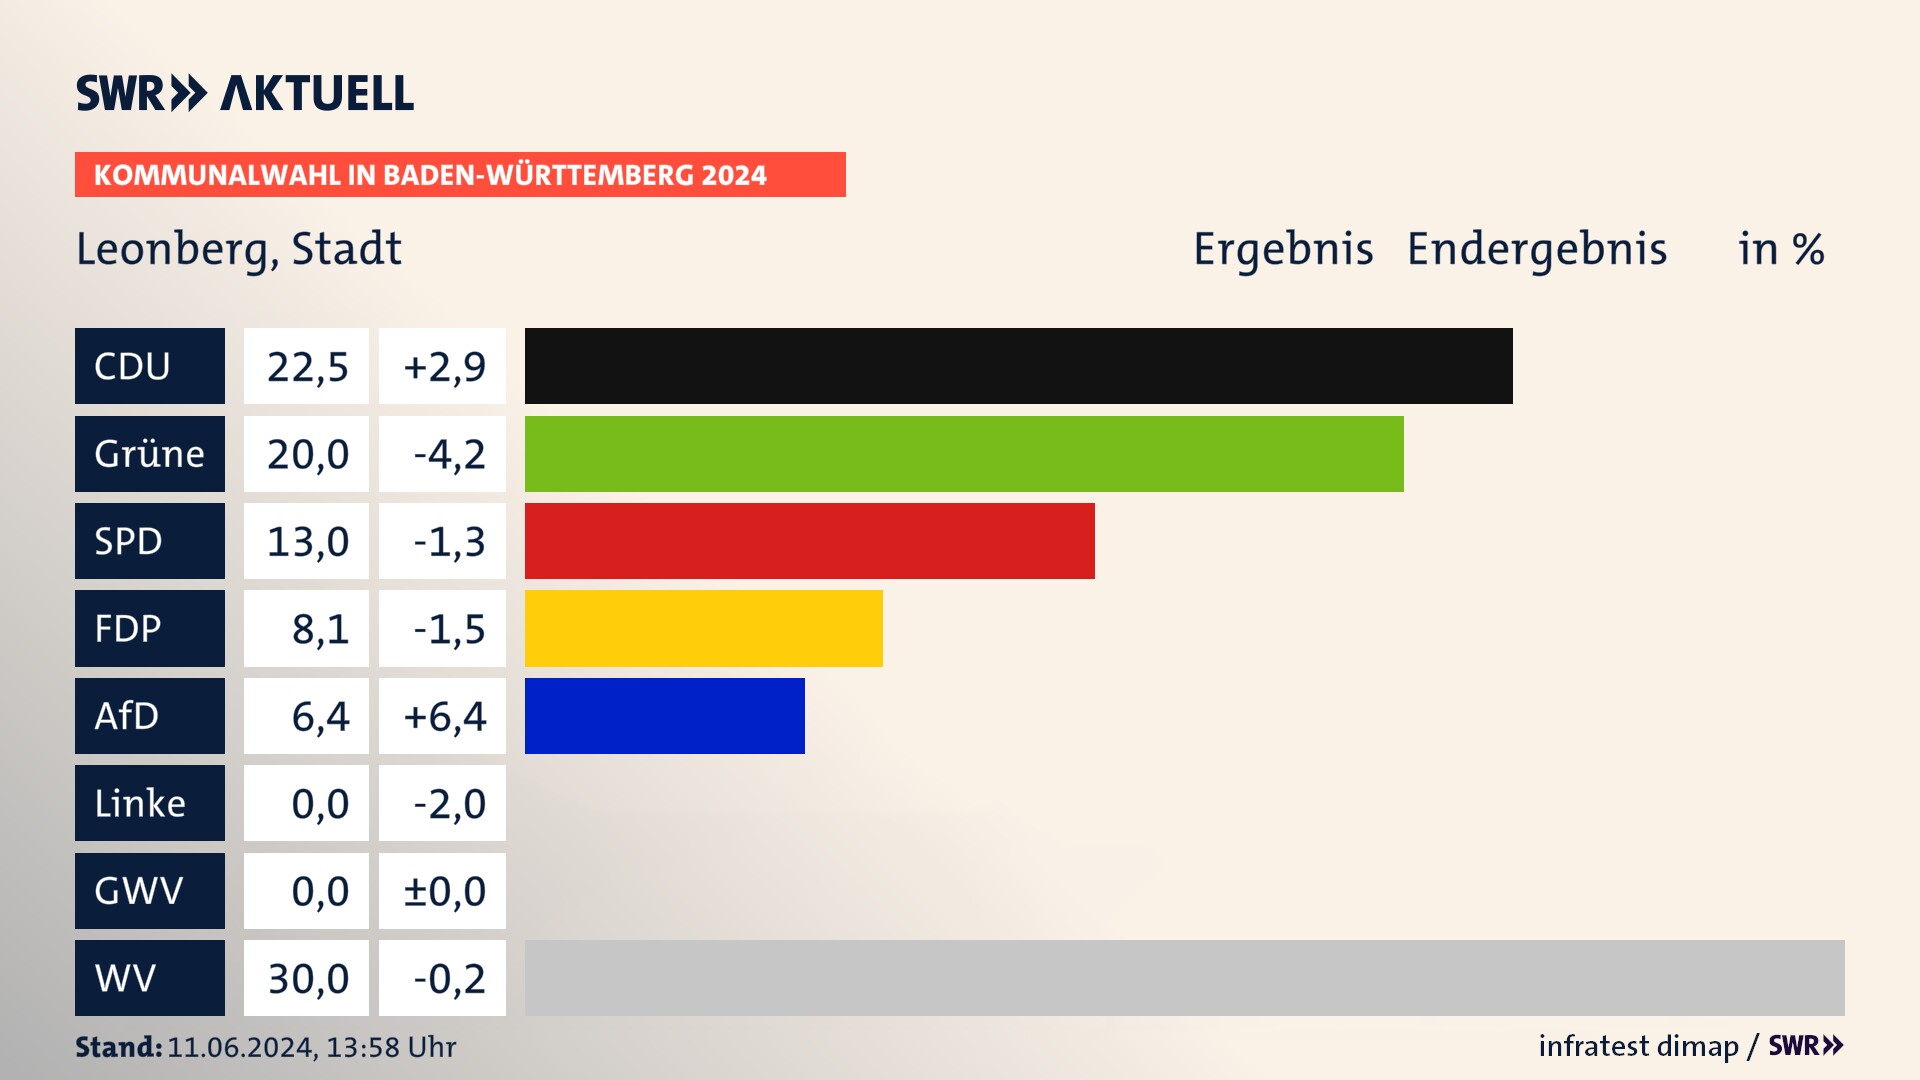 Kommunalwahl 2024 Endergebnis Zweitstimme für Leonberg. In Leonberg, Stadt erzielt die CDU 22,5 Prozent der gültigen  Stimmen. Die Grünen landen bei 20,0 Prozent. Die SPD erreicht 13,0 Prozent. Die FDP kommt auf 8,1 Prozent. Die AfD landet bei 6,4 Prozent. Die Wählervereinigungen erreichen 30,0 Prozent.